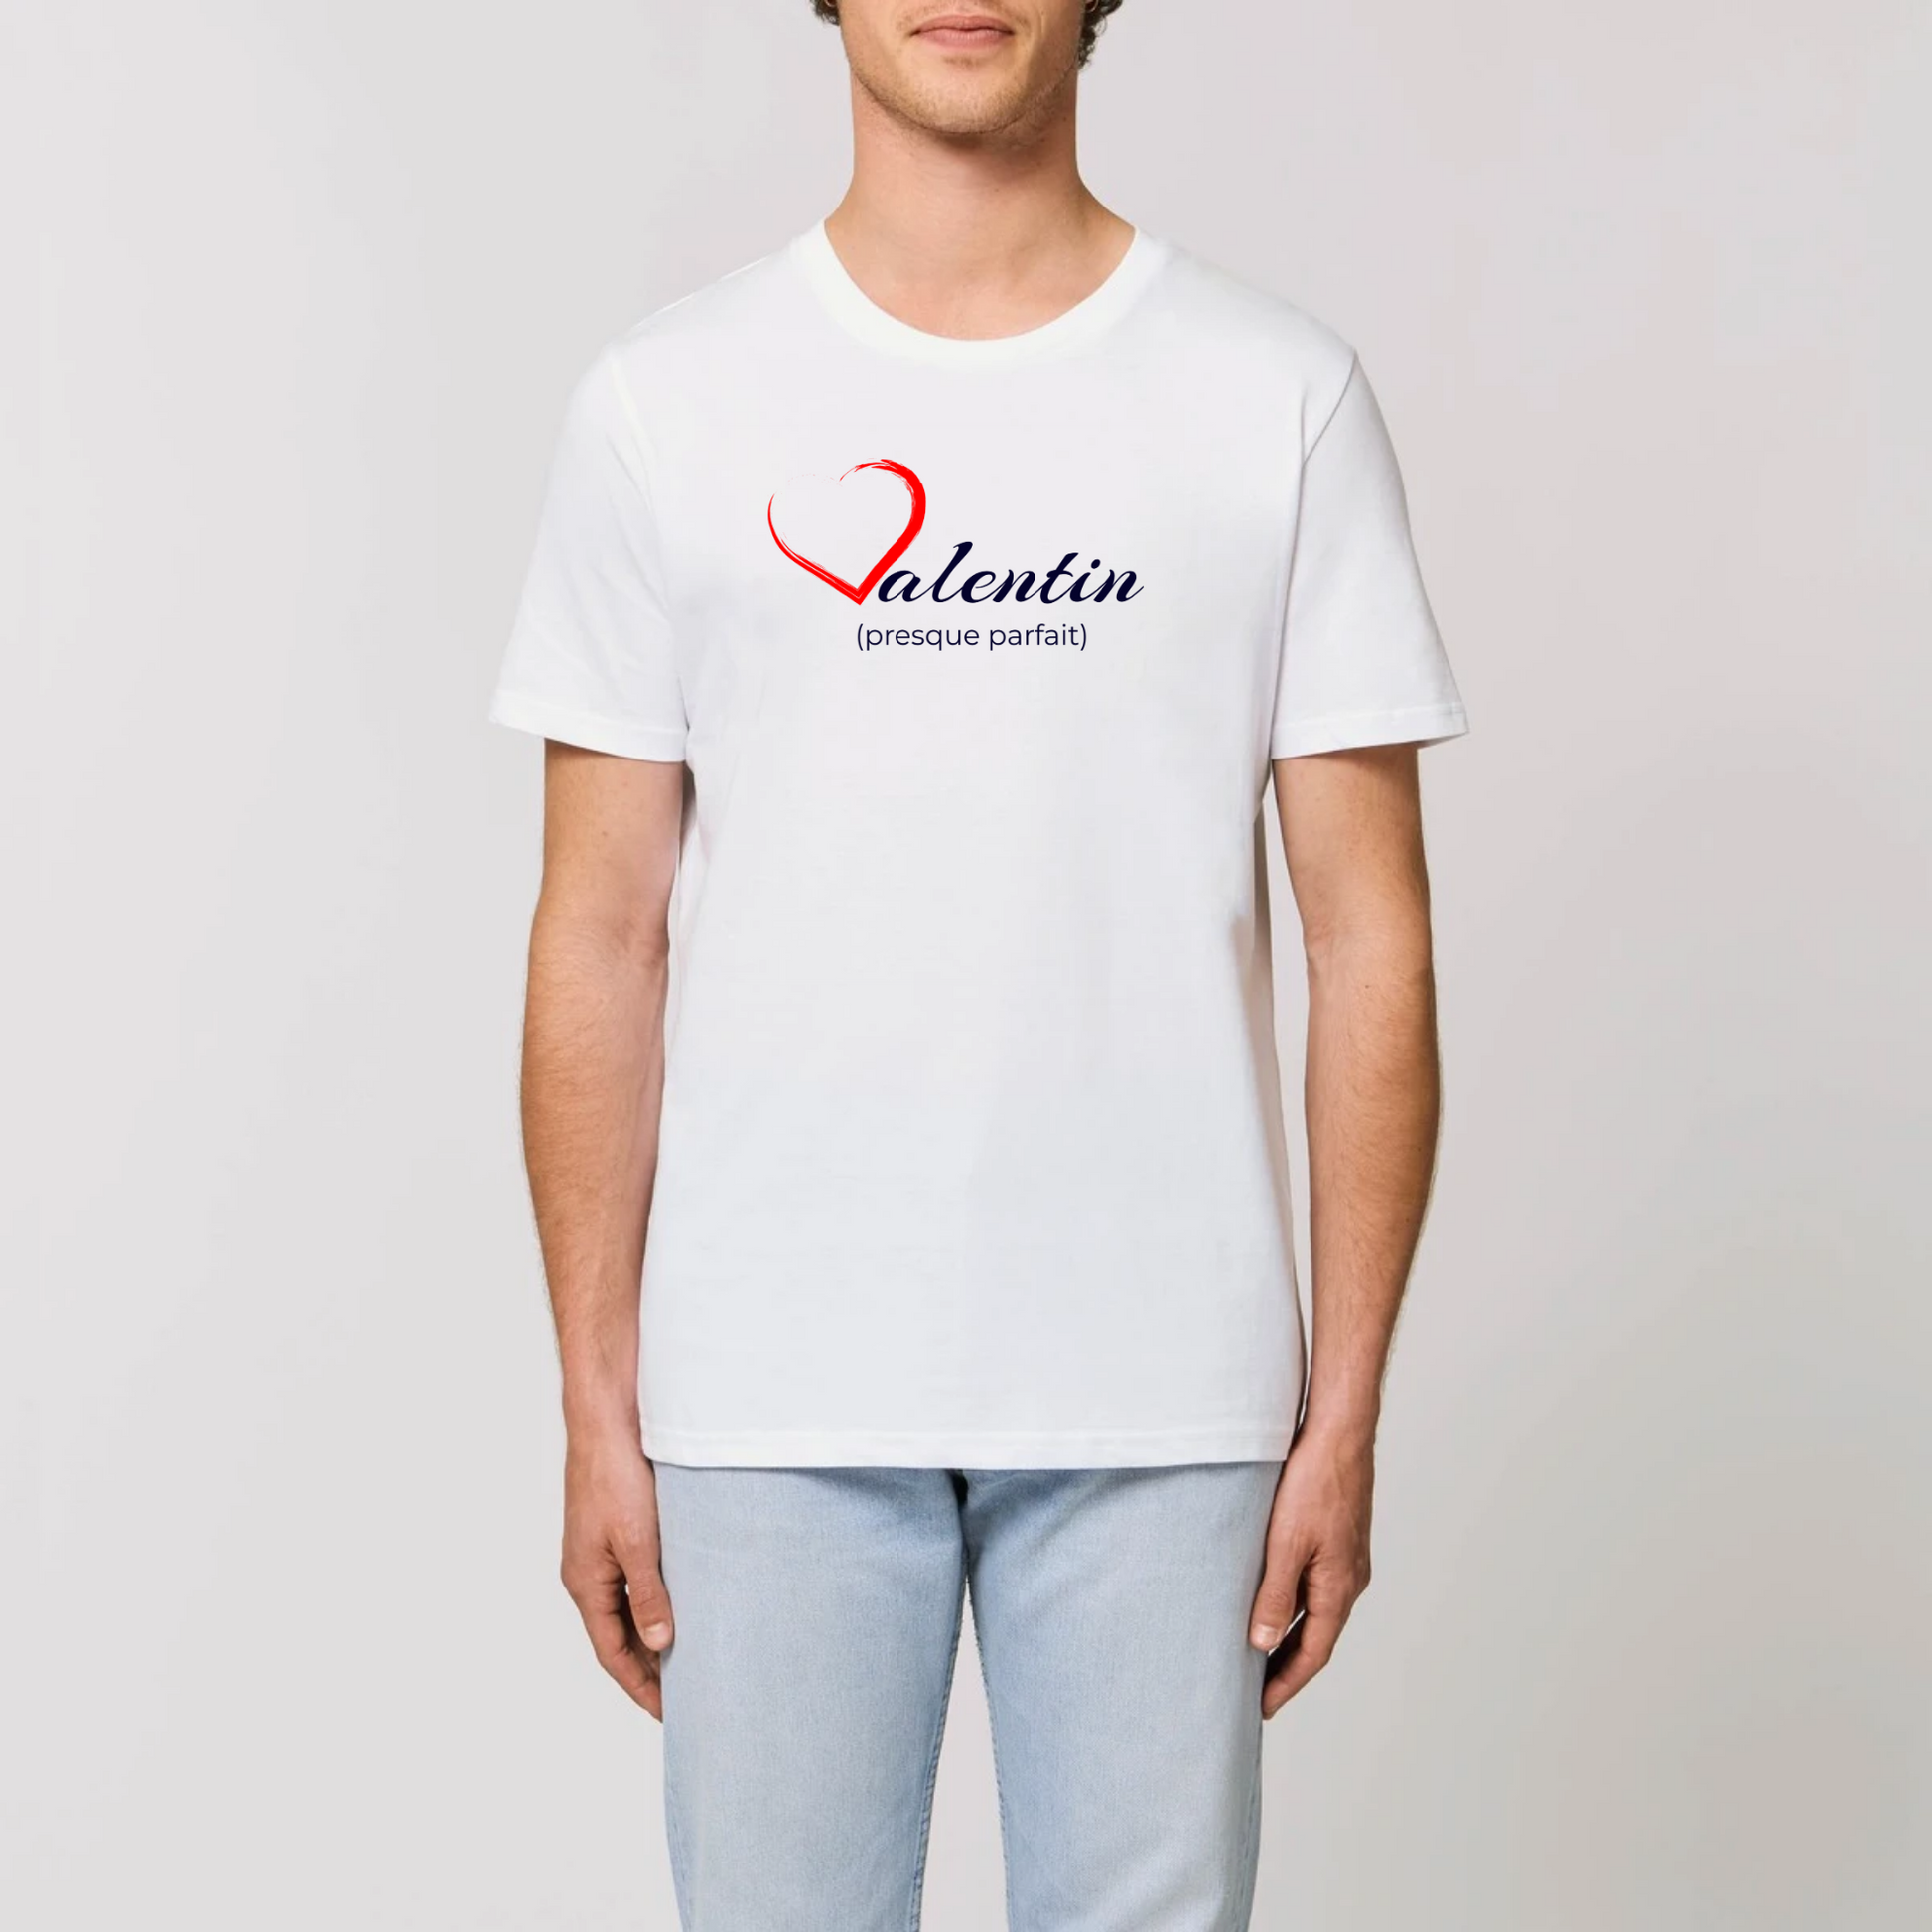 t-shirt homme Valentin coton bio T-French, tee shirt homme, saint valentin, idée cadeau, biologique, éco-responsable, Blanc